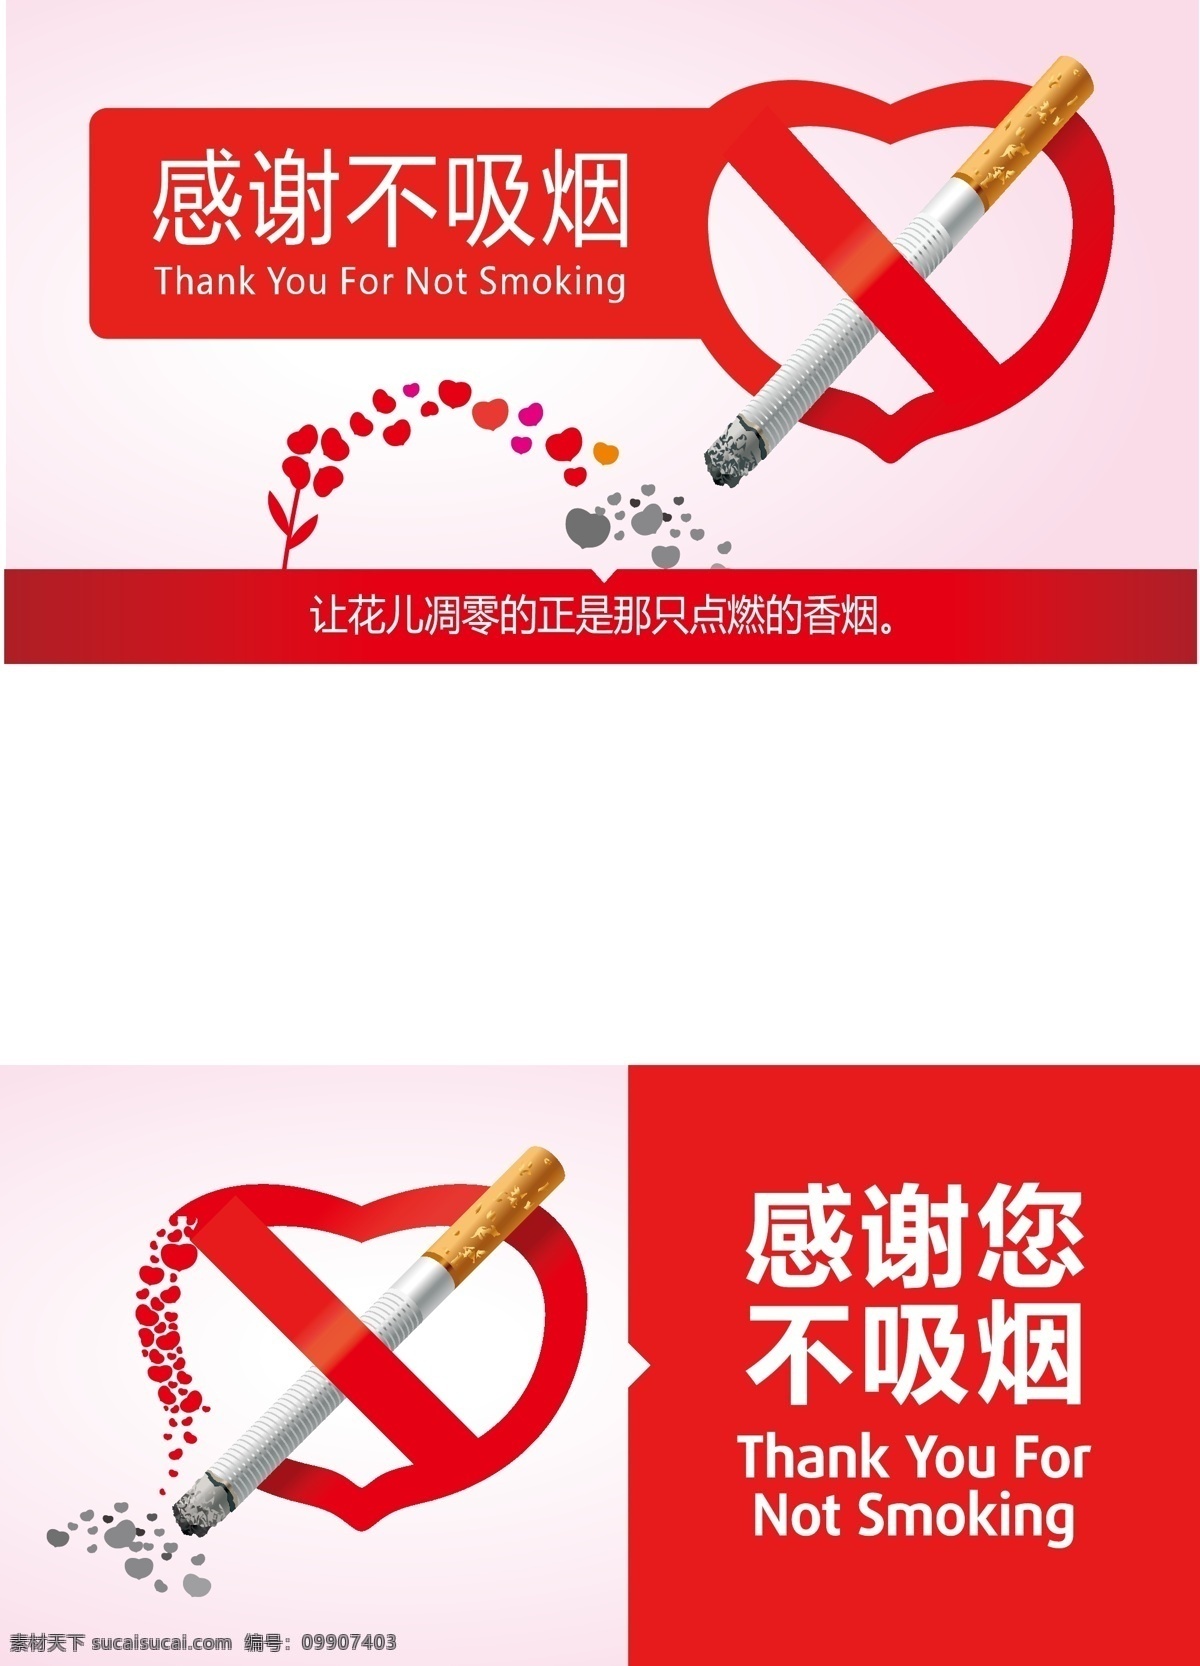 禁烟标志 创意禁烟标志 禁烟 简易禁烟标志 感谢您不抽烟 心形禁烟标志 vi设计